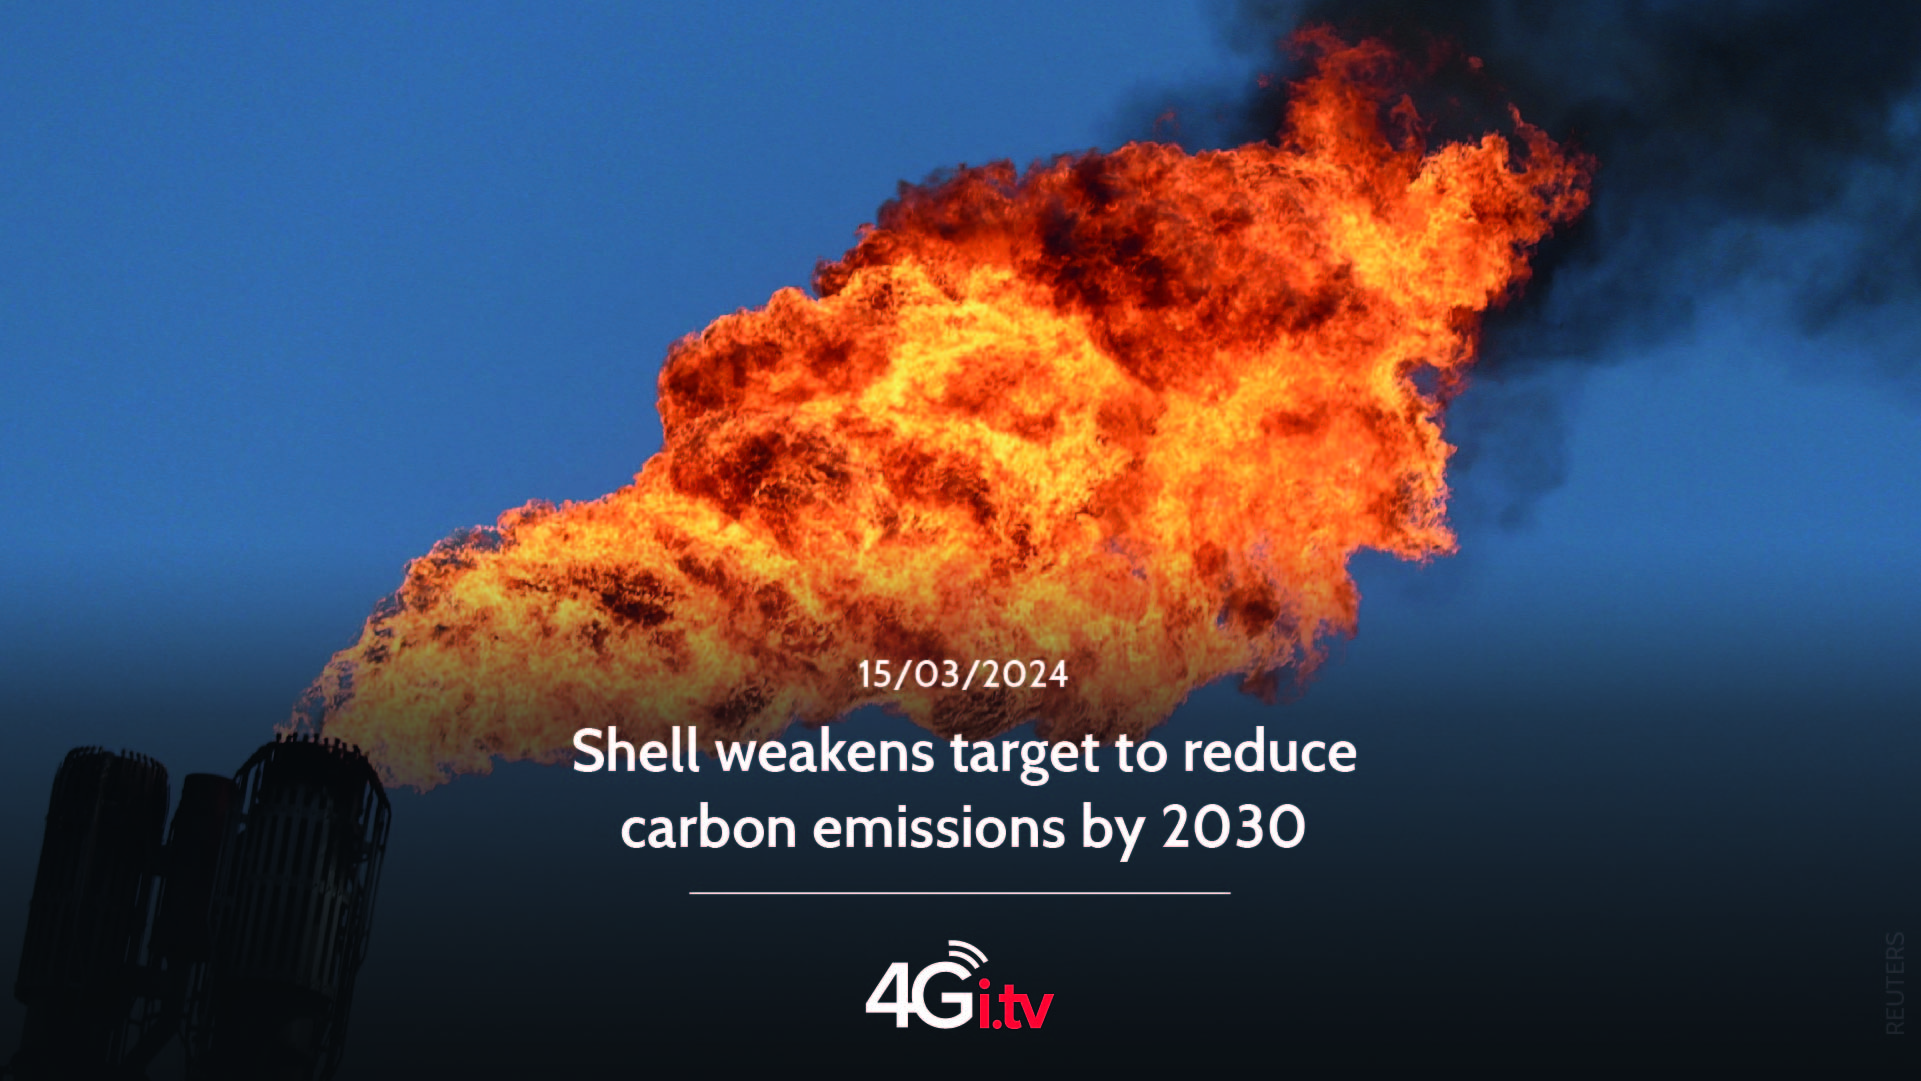 Lesen Sie mehr über den Artikel Shell weakens target to reduce carbon emissions by 2030